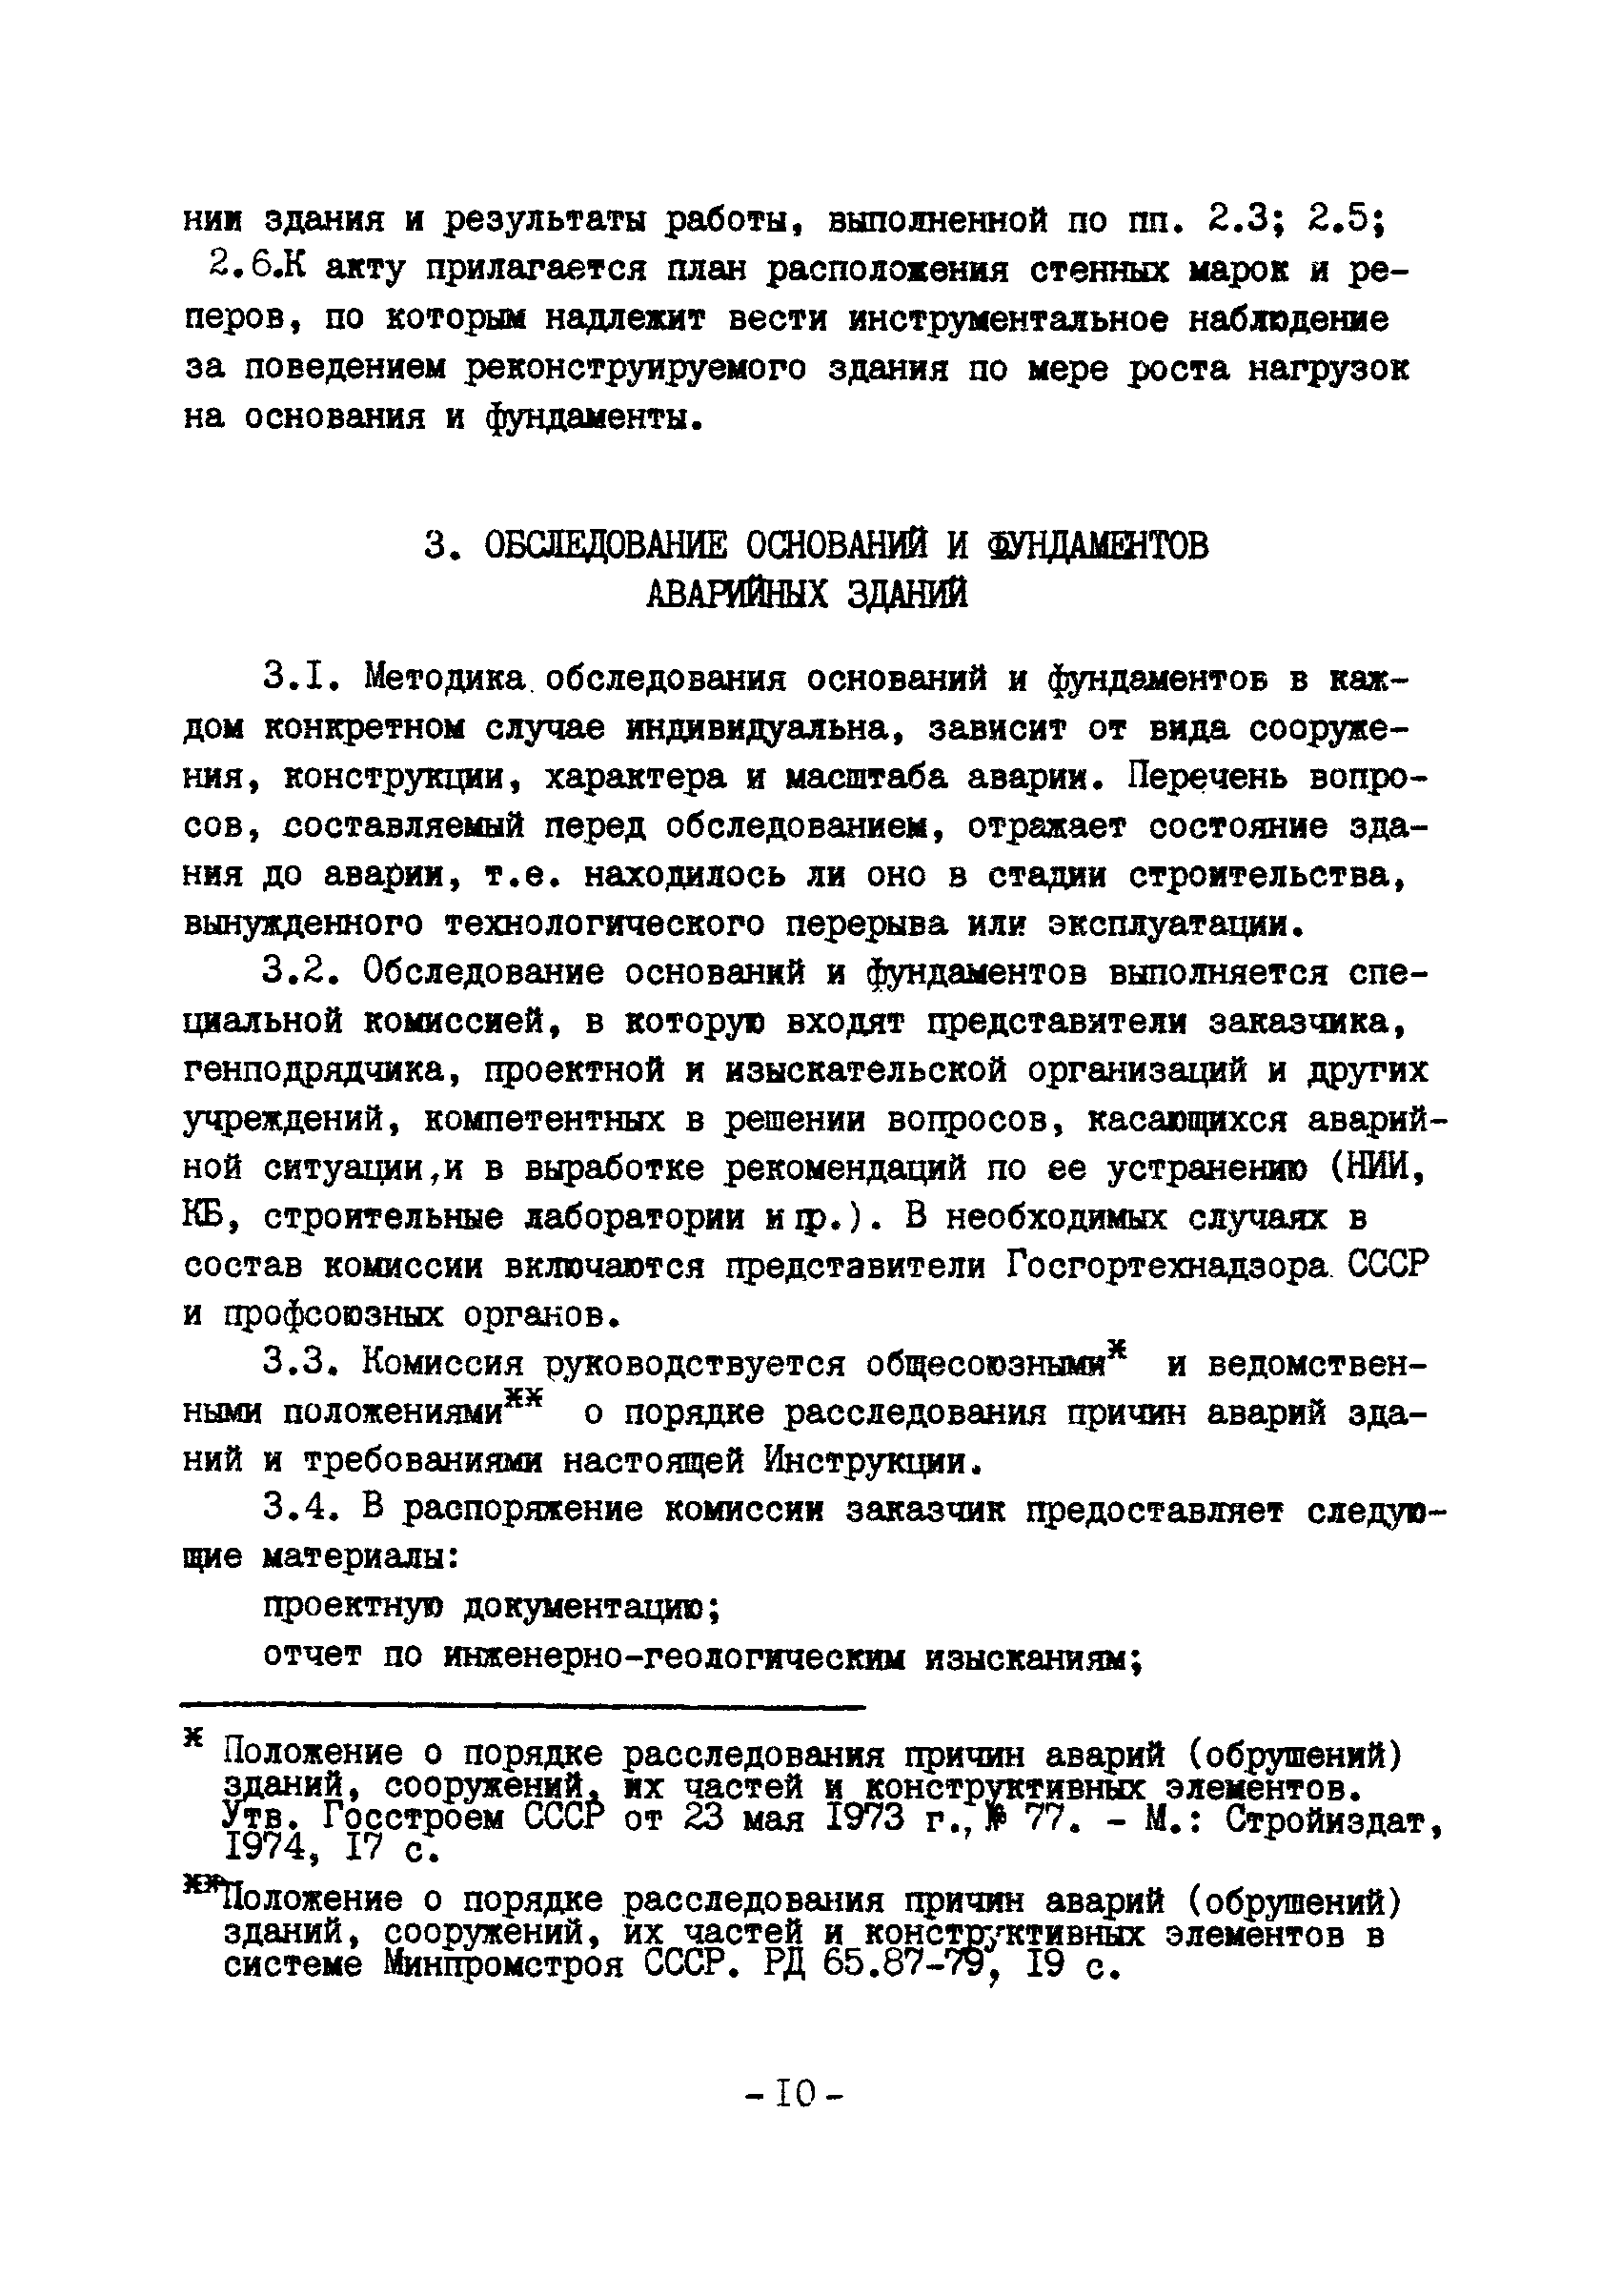 ВСН 16-84/Минпромстрой СССР